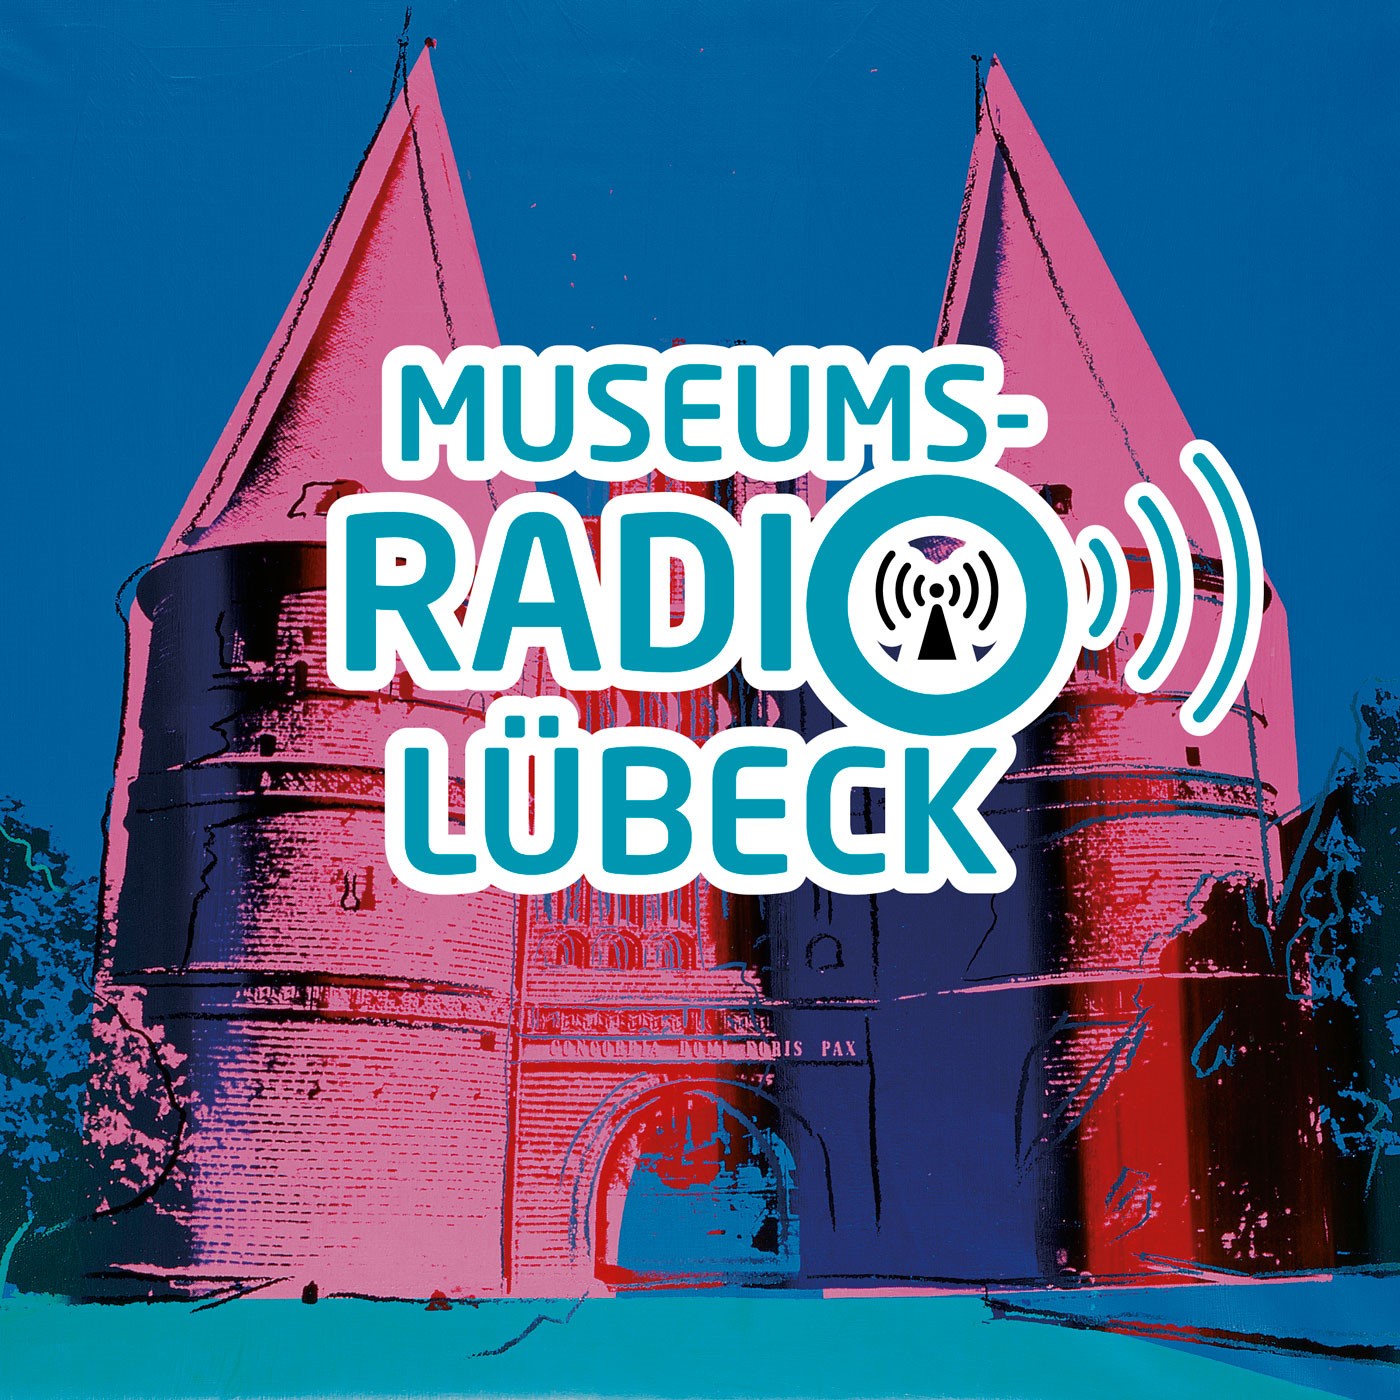 Museumsradio Lübeck -  so vielfältig wie die Lübecker Museen